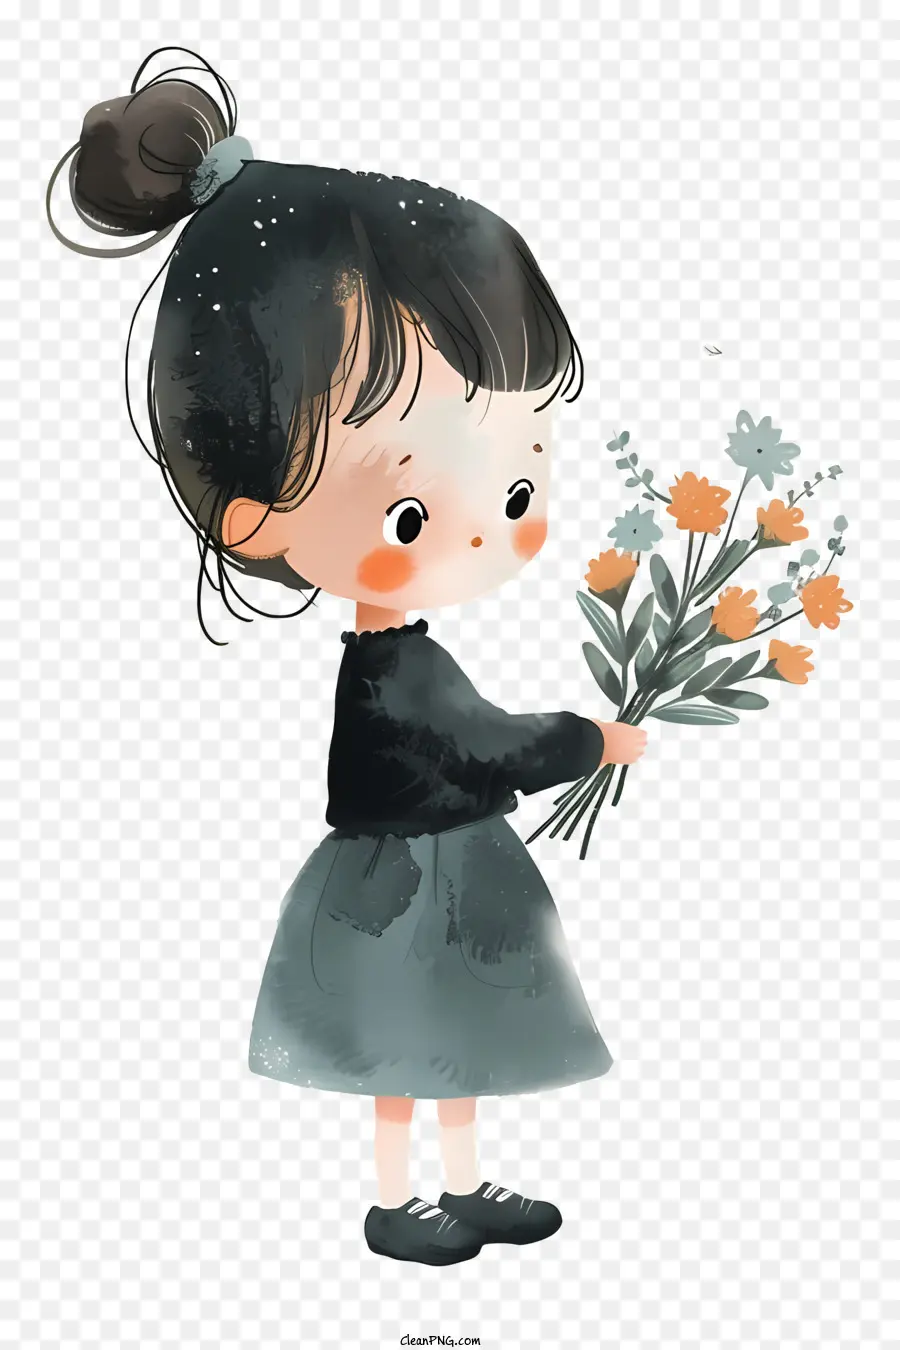 Ragazza che tiene fiori di fiori carini fiori per capelli marroni vestito nero - Ragazza carina con fiori nel disegno stravagante